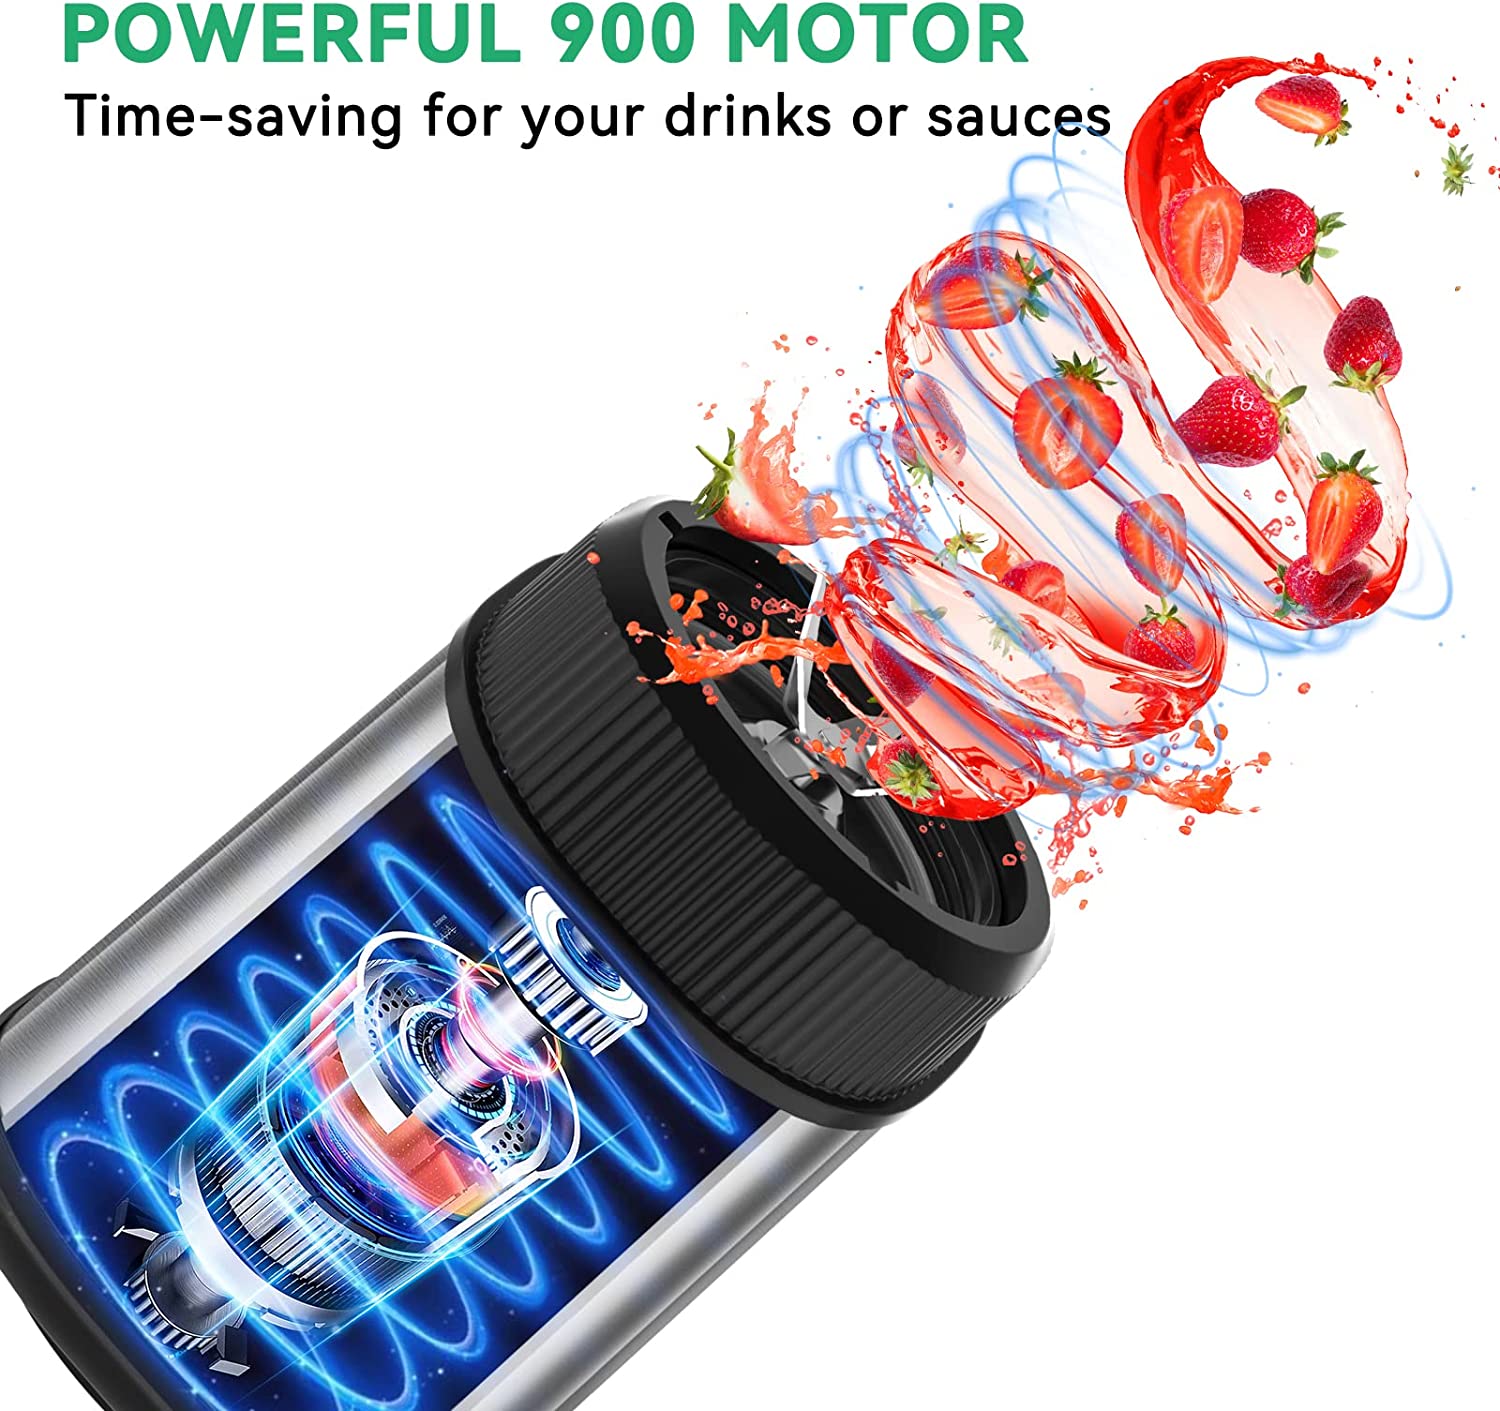 Abuler 5-in-1 800W Handheld Mixer, 12 Speed BPA-Free Stick Blender